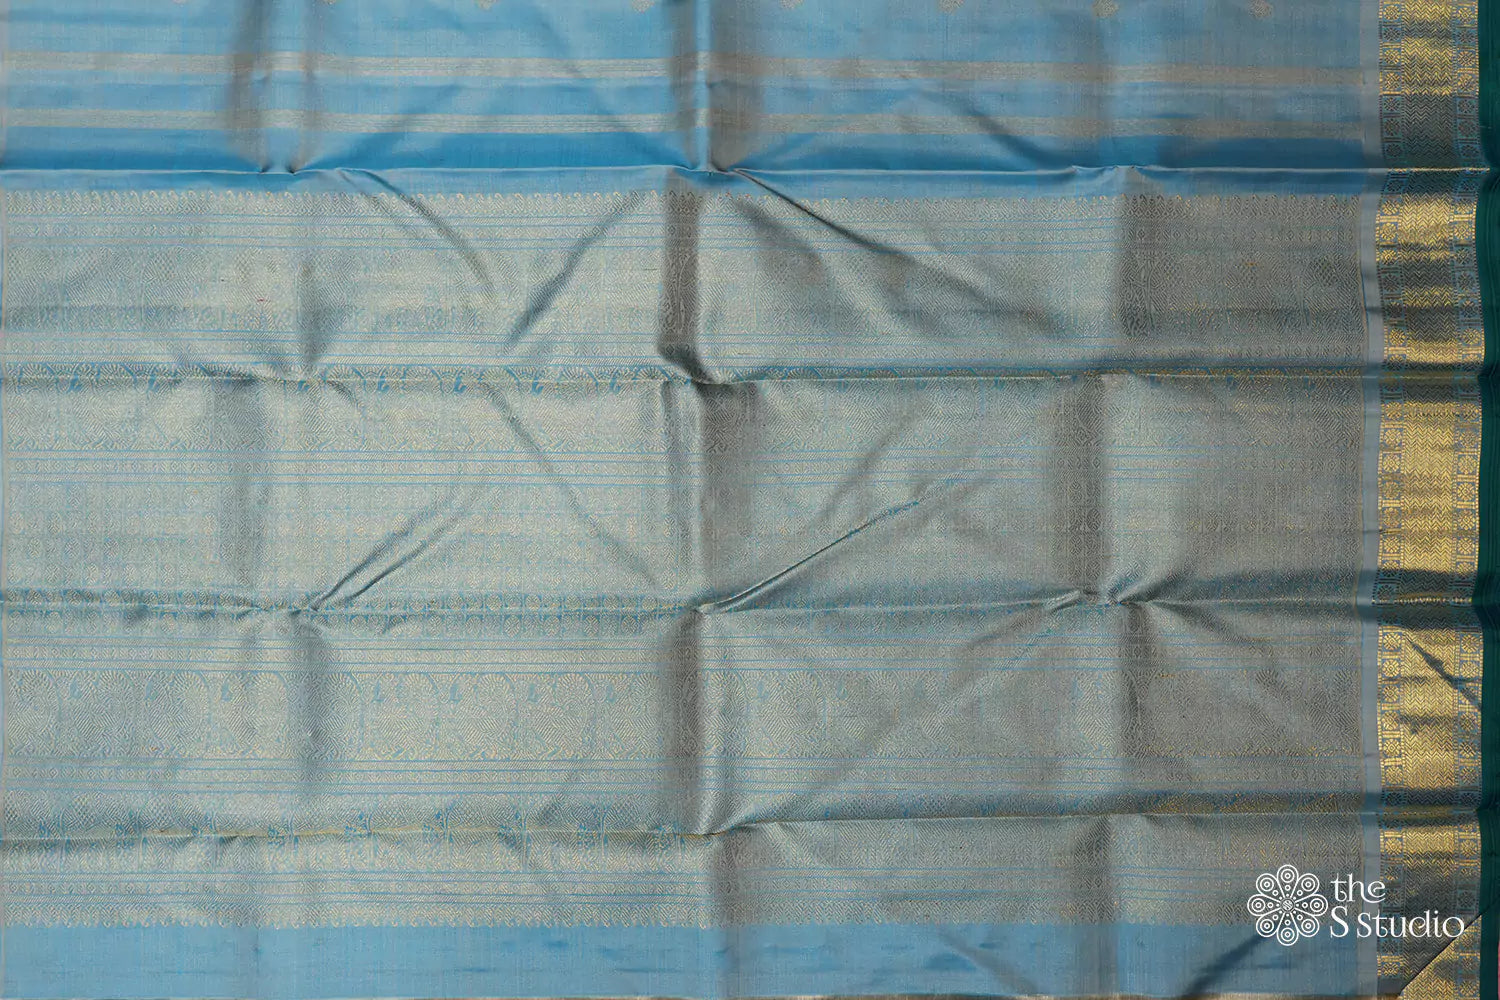 Powder blue vairaoosi kanjivaram silk saree